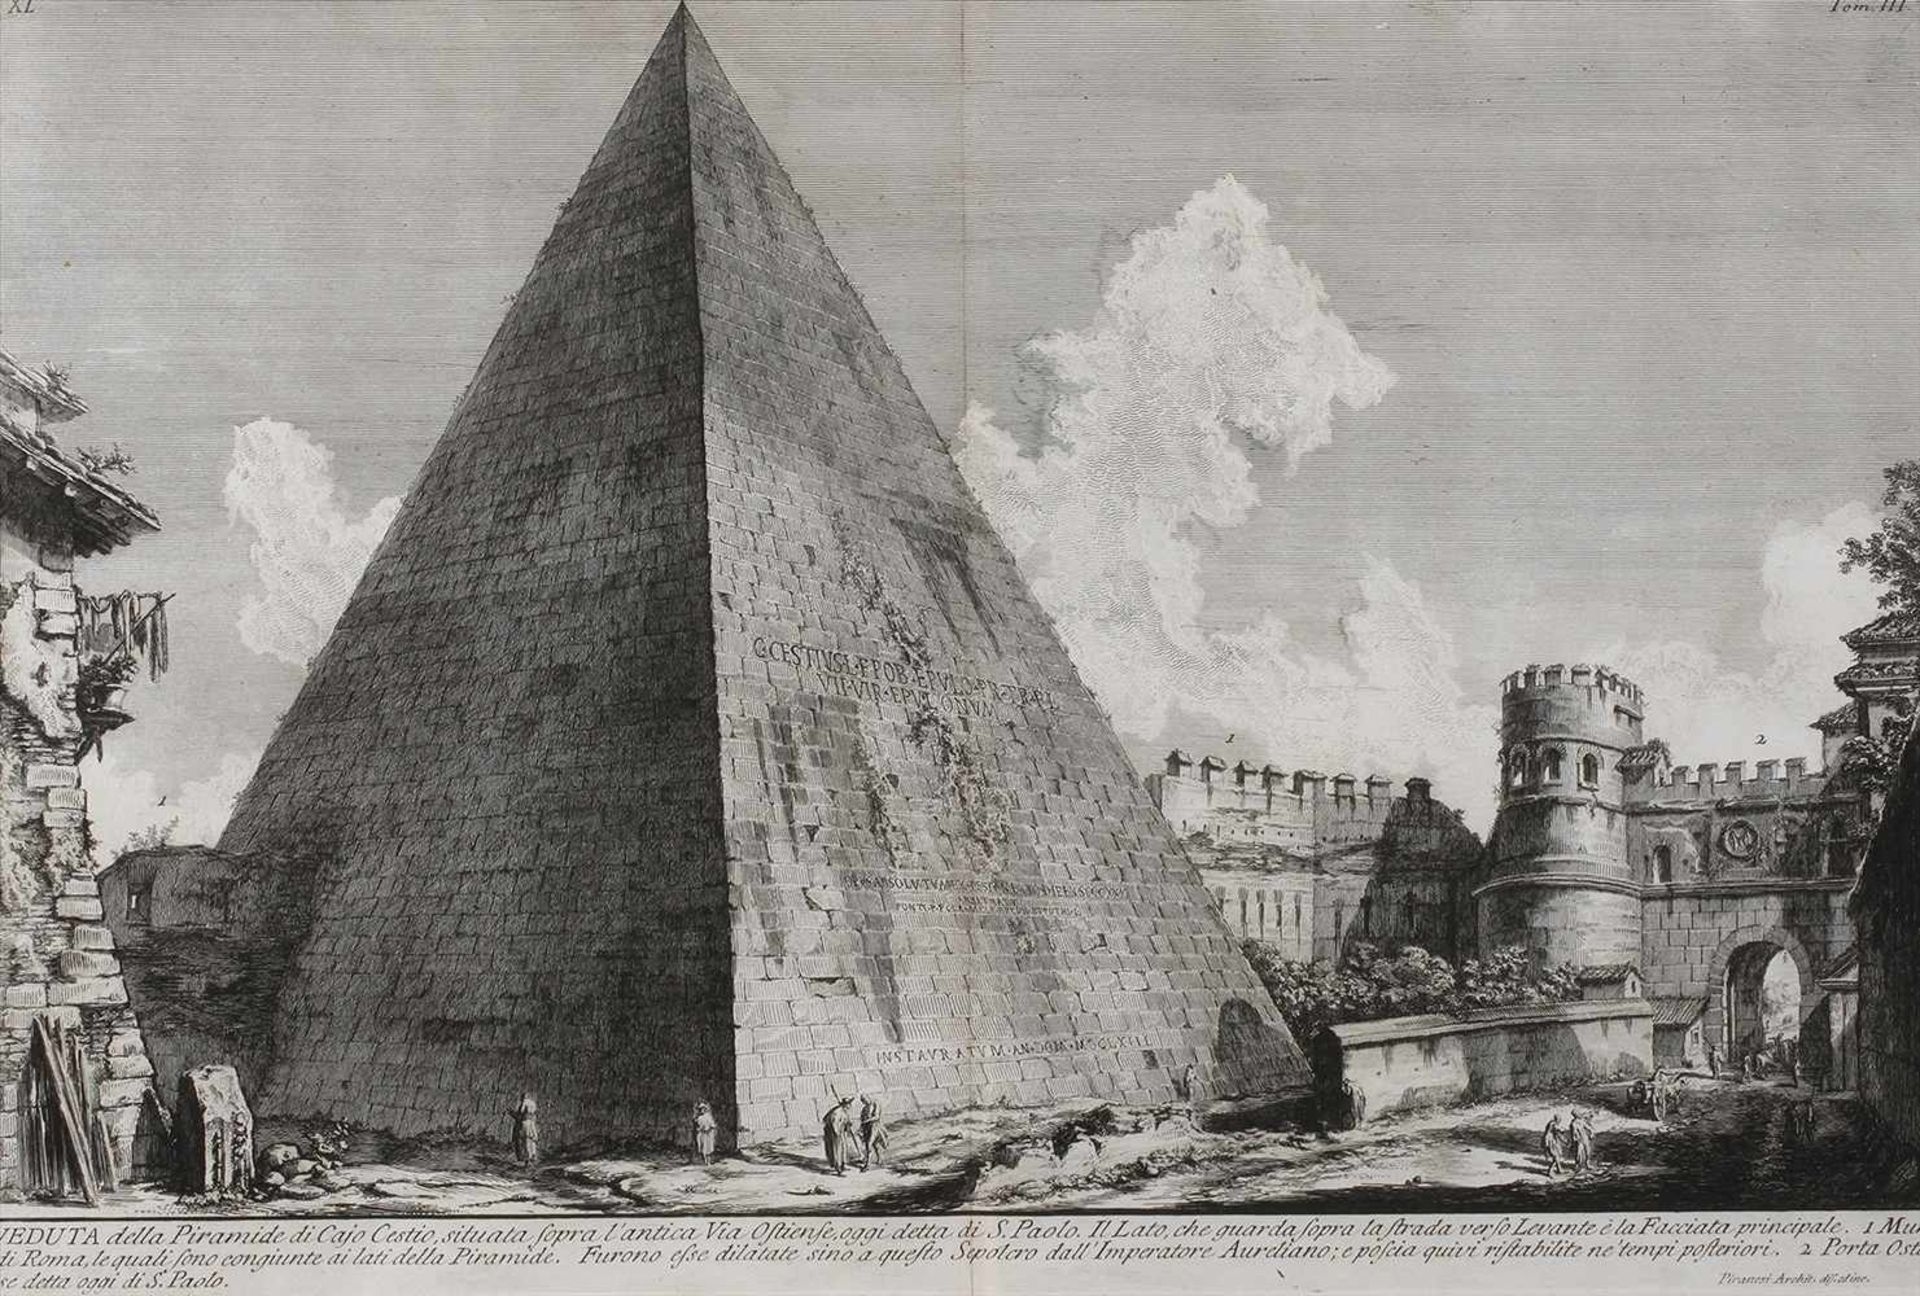 Giovanni Battista Piranesi, Cestius PyramideAnsicht des ungewöhnlichen Bauwerkes an einem der